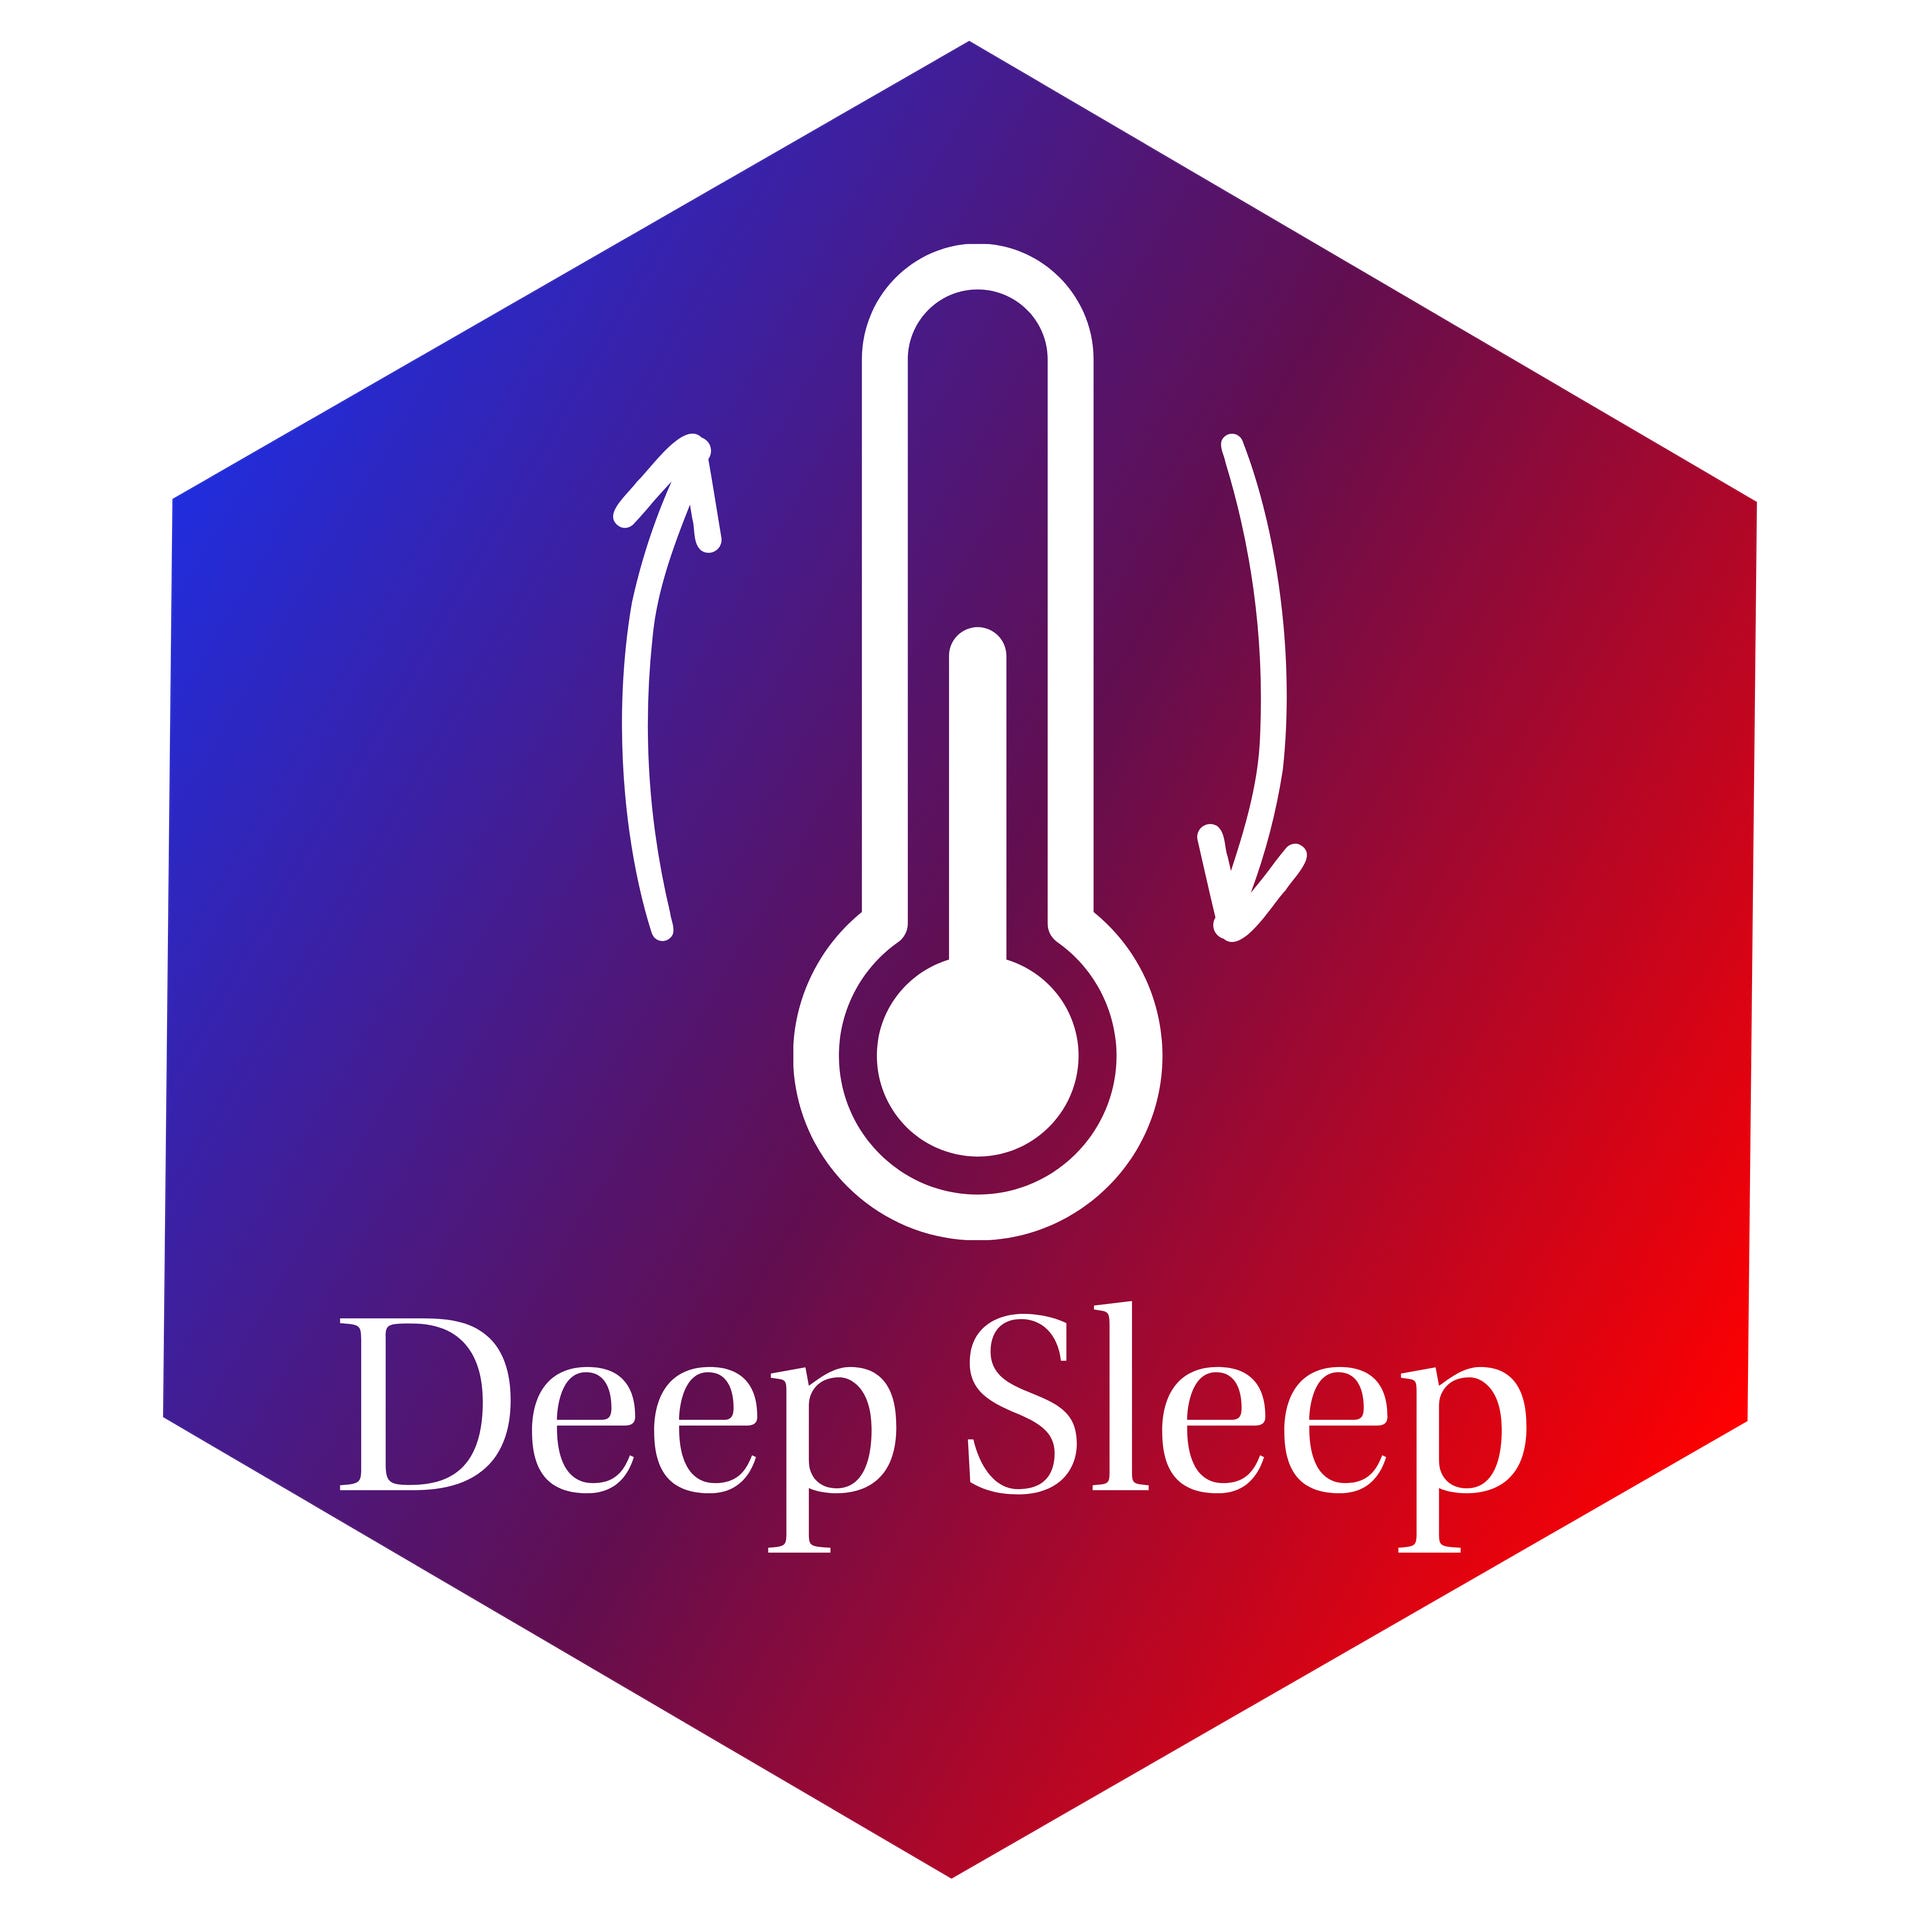 Deeper_Sleep_(3).png